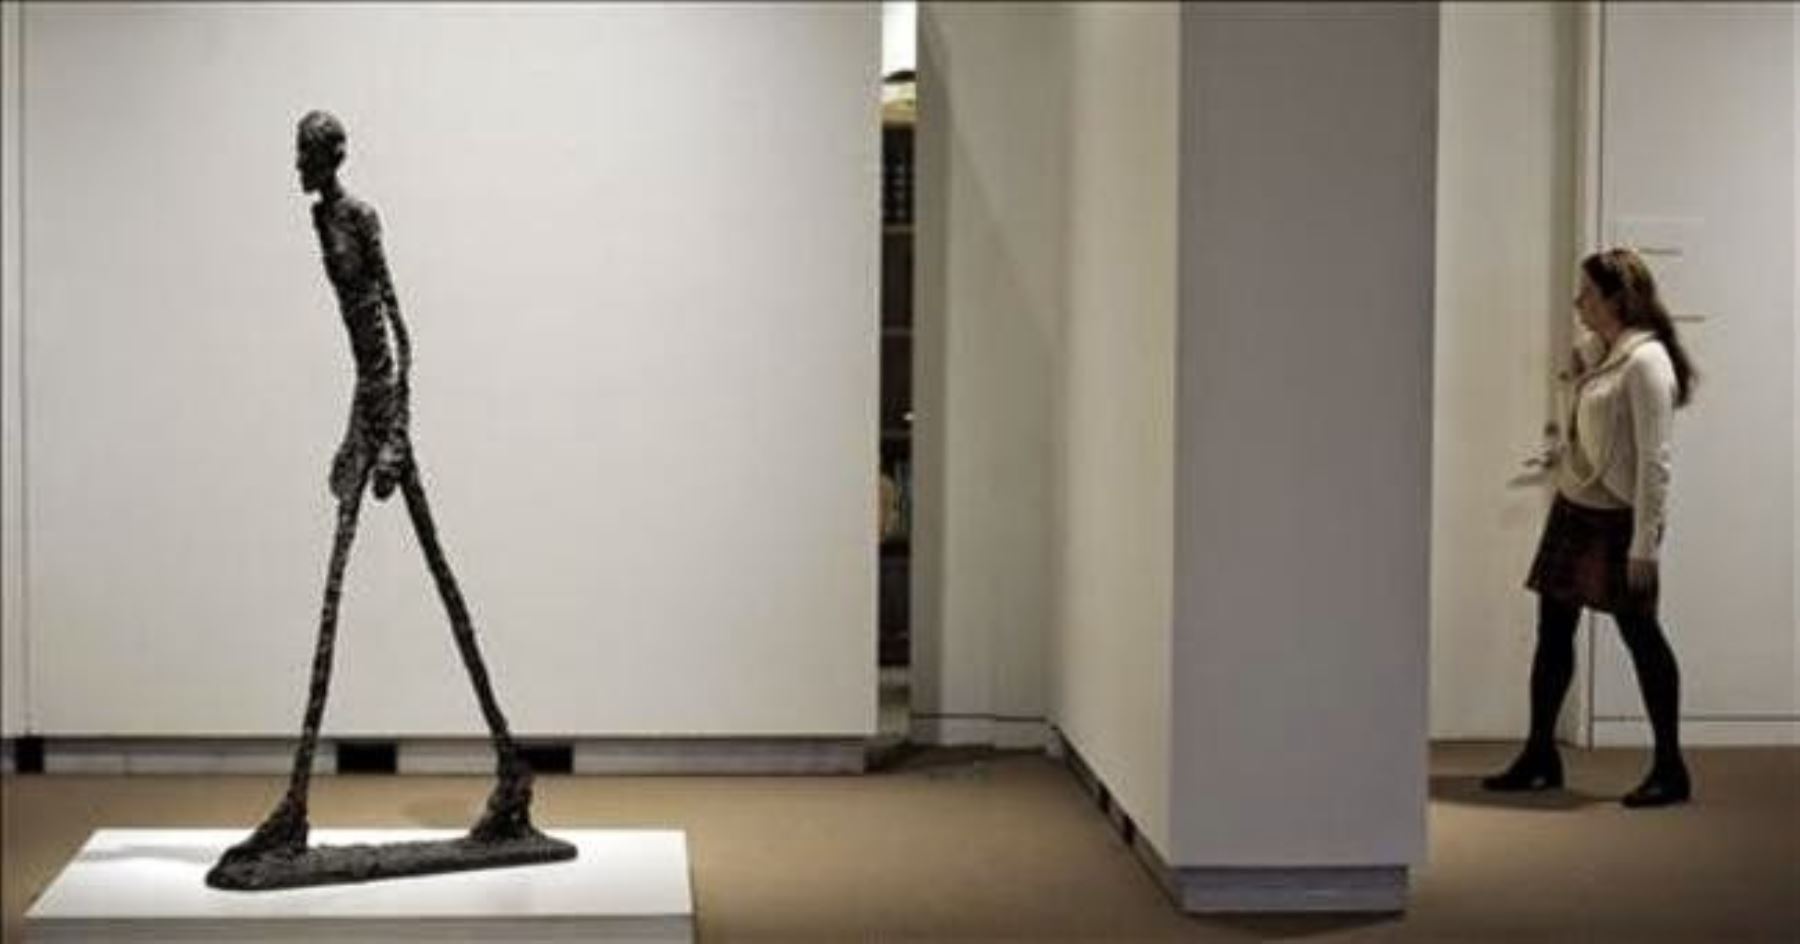 9- Alberto Giacometti, "El hombre que camina I", escultura vendida en 65 millones de libras esterlinas (103,93 millones de dólares al cambio de entonces) el 3 de febrero de 2010 en Sotheby